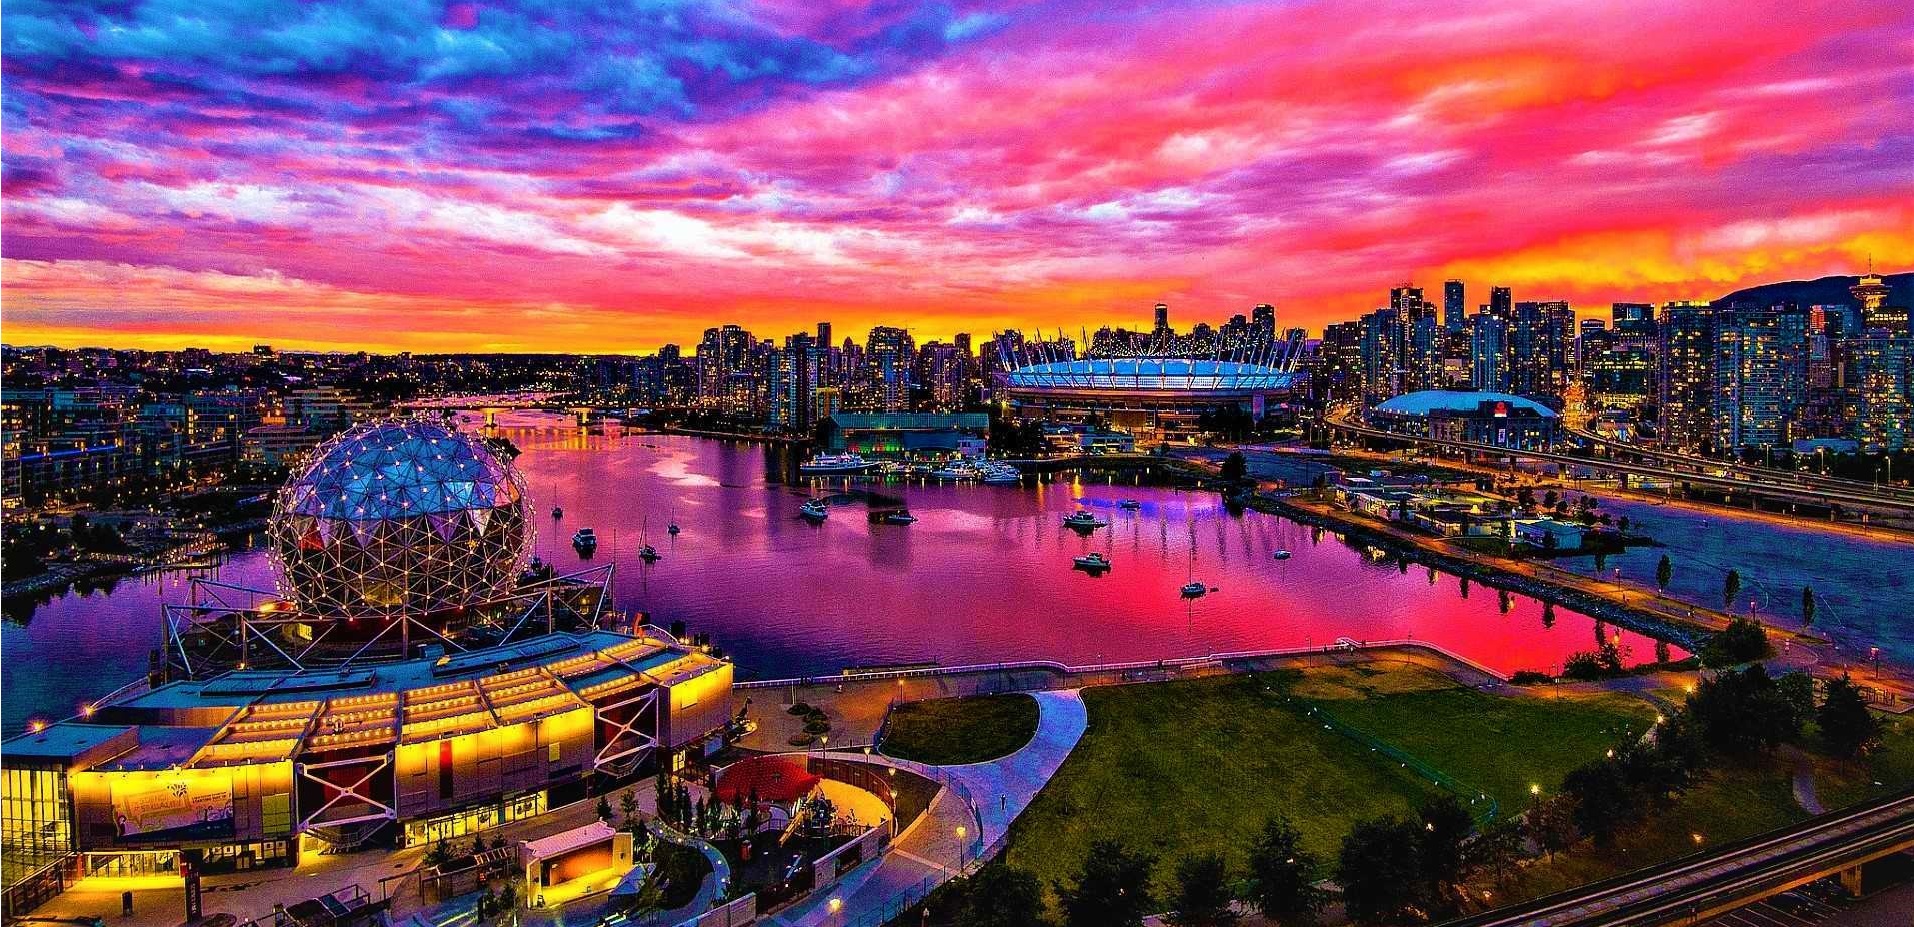 غروب زیبای ونکوور کانادا با منظره دلفریب از شهر